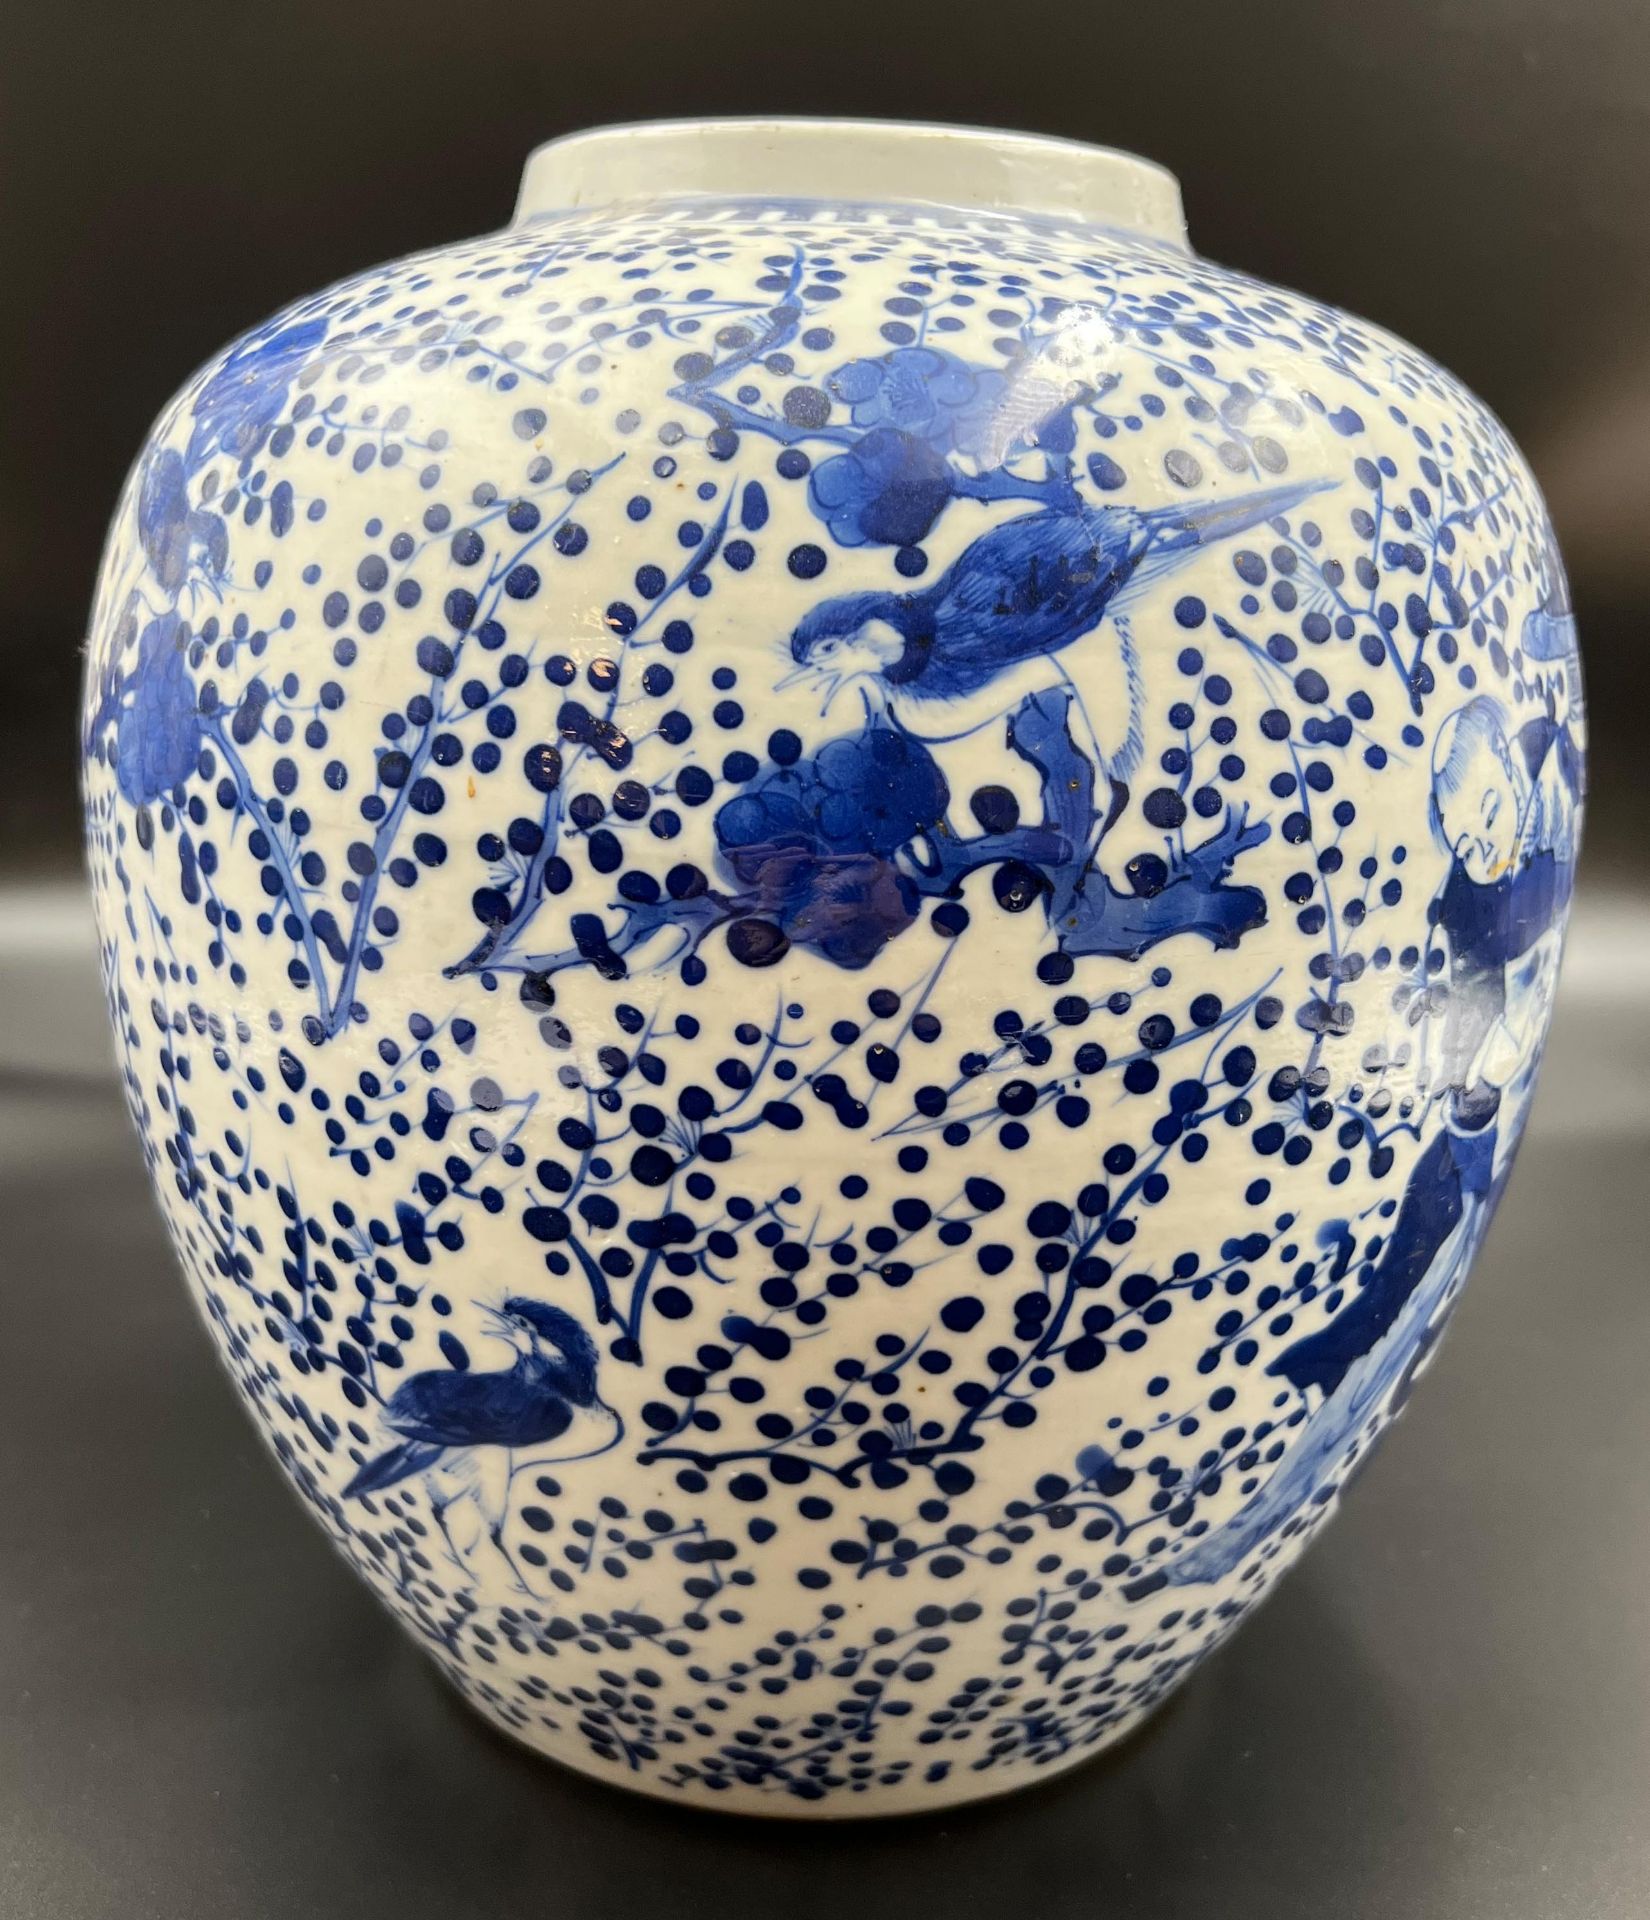 Blau-weiße Porzellan Vase mit He-He Er Xian Dekor. China. 19. Jahrhundert. - Bild 4 aus 12